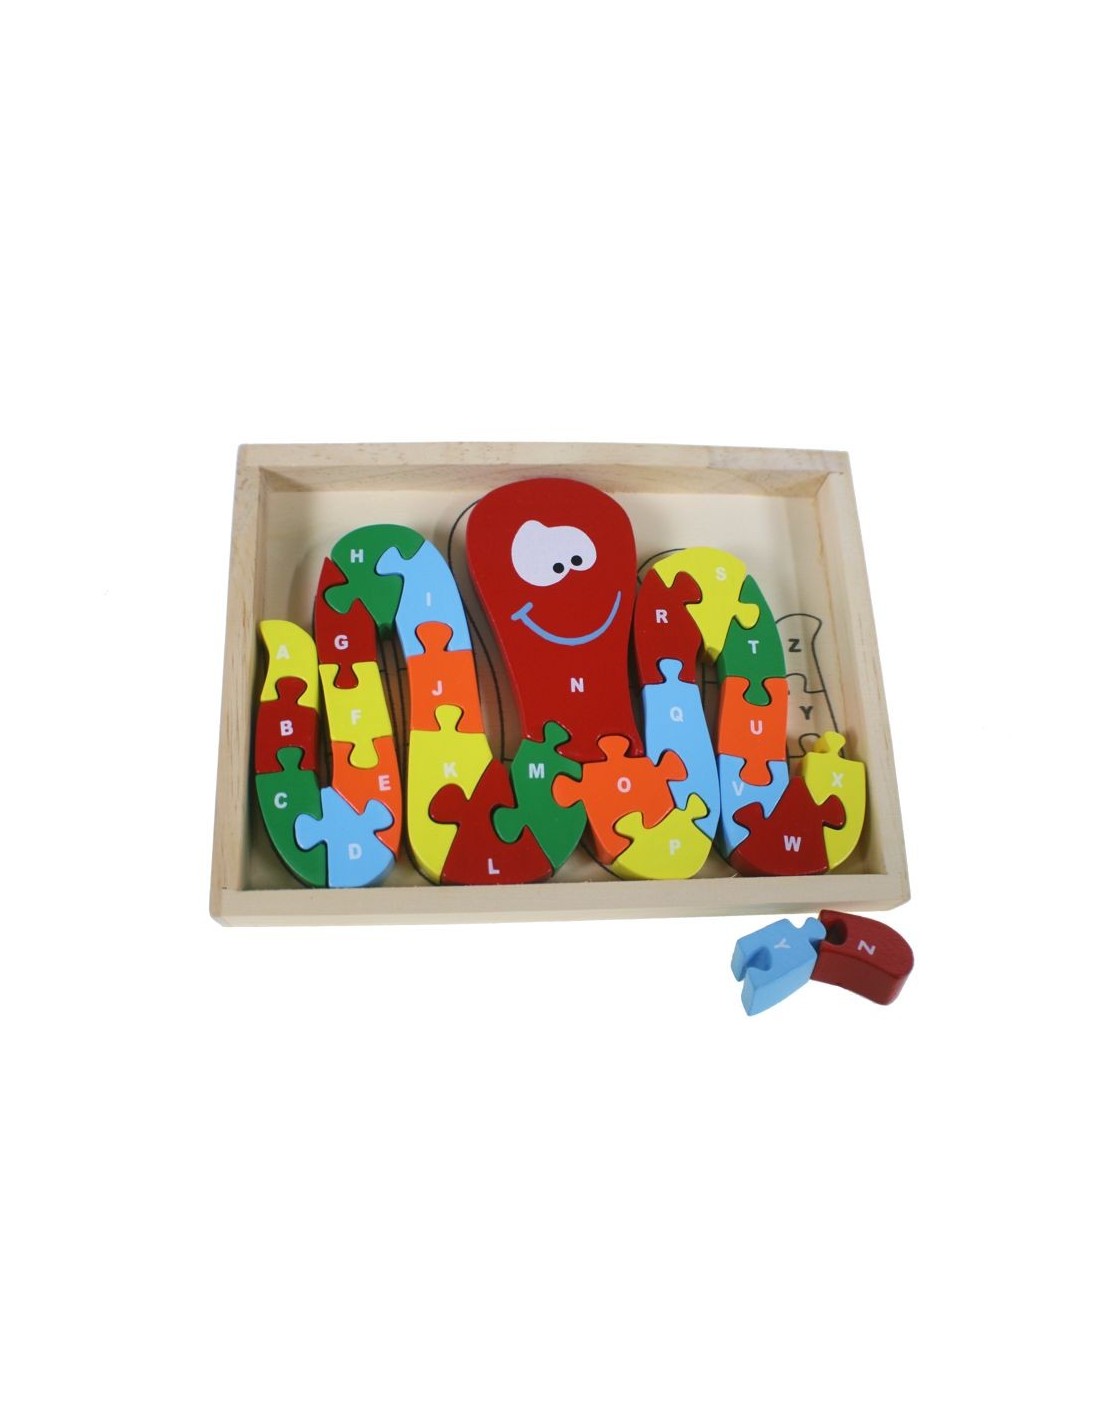 Puzle pop de fusta acolorida amb lletres i números joc educatiu infantil per aprendre l'abecedari